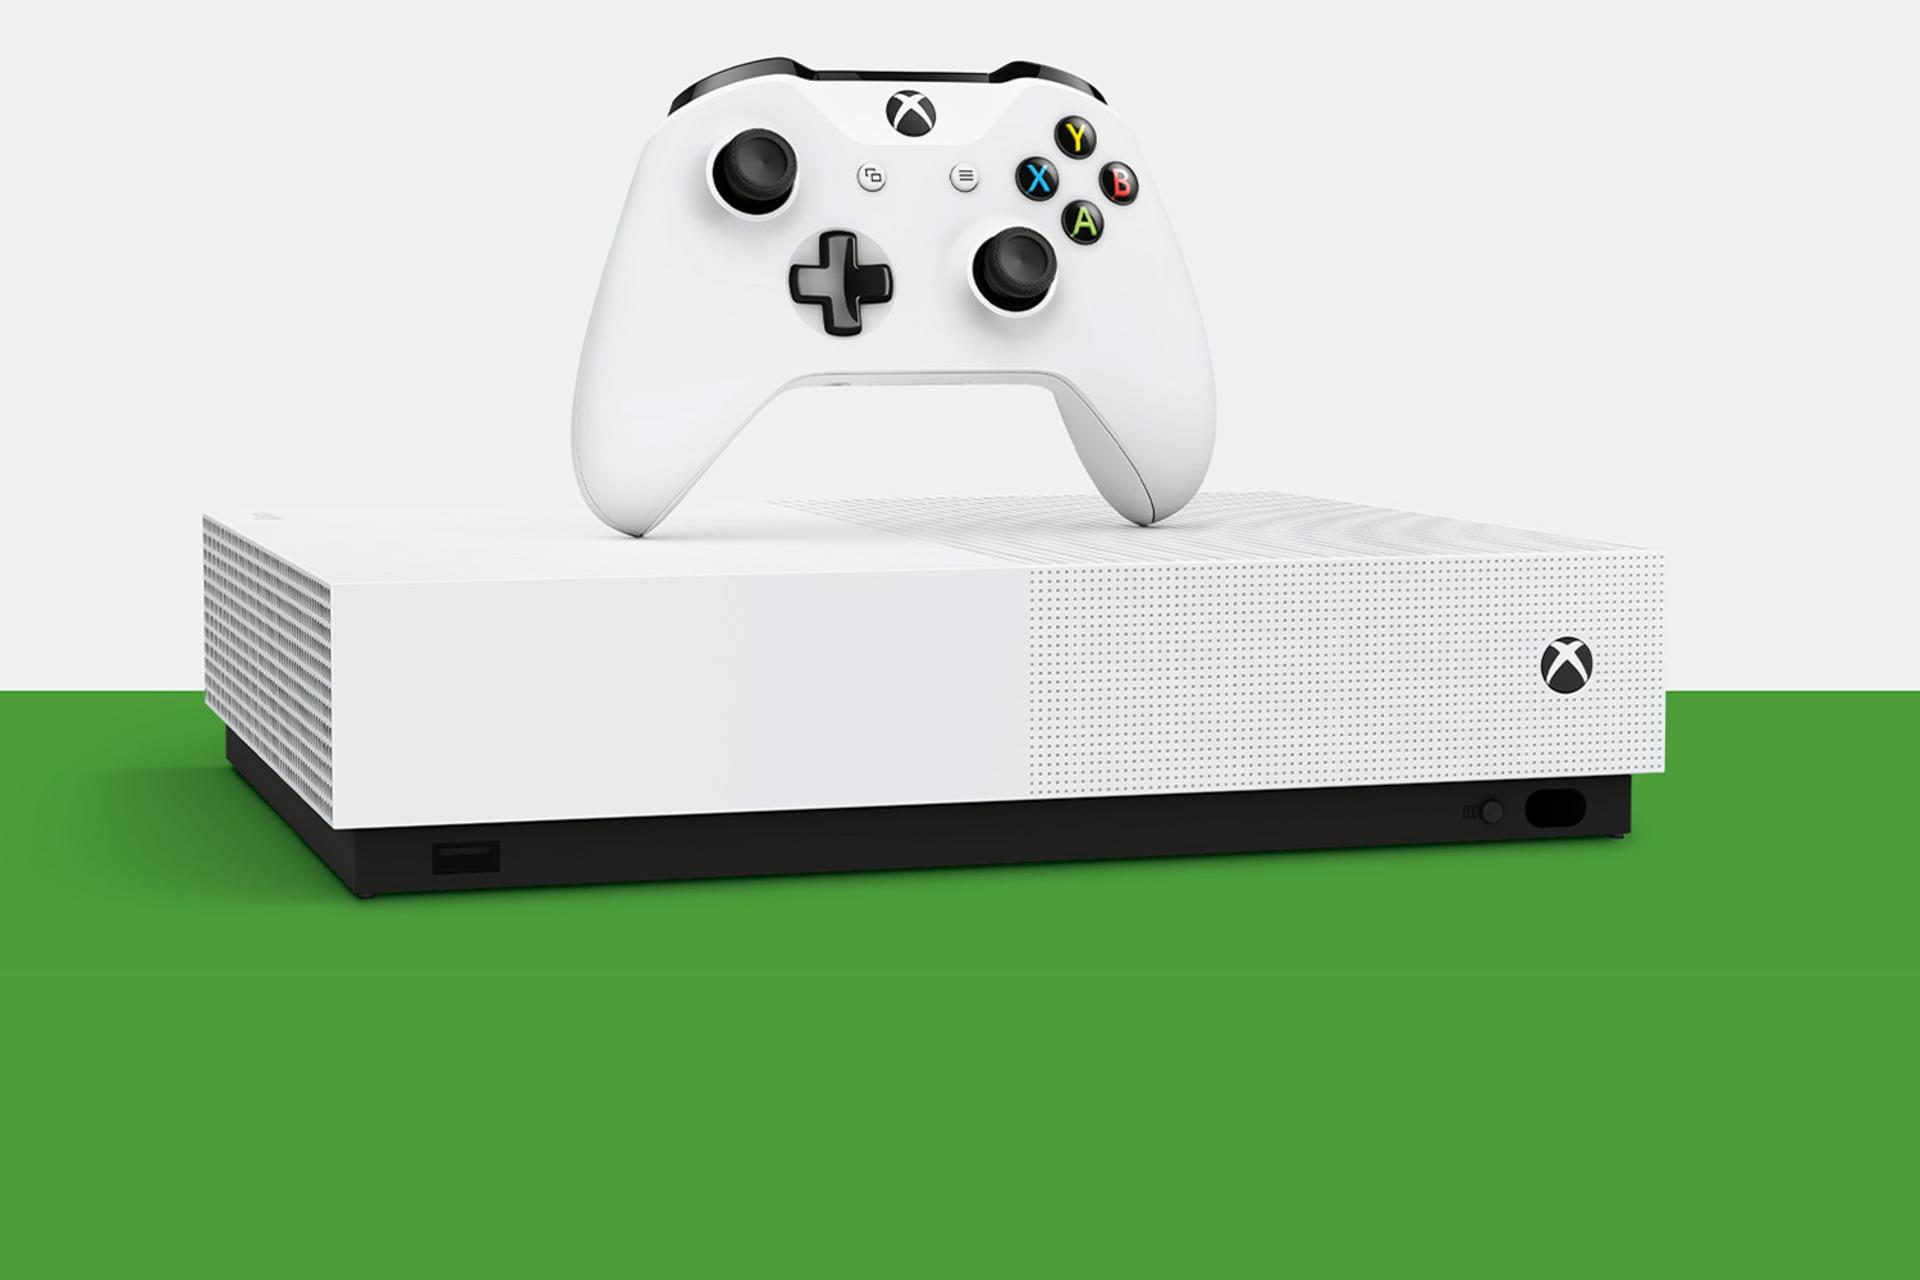 مرجع متخصصين ايران كنسول Microsoft Xbox One S All-Digital Edition نماي جلو و دسته و بازي - رنگ سبز / ايكس باكس وان اس